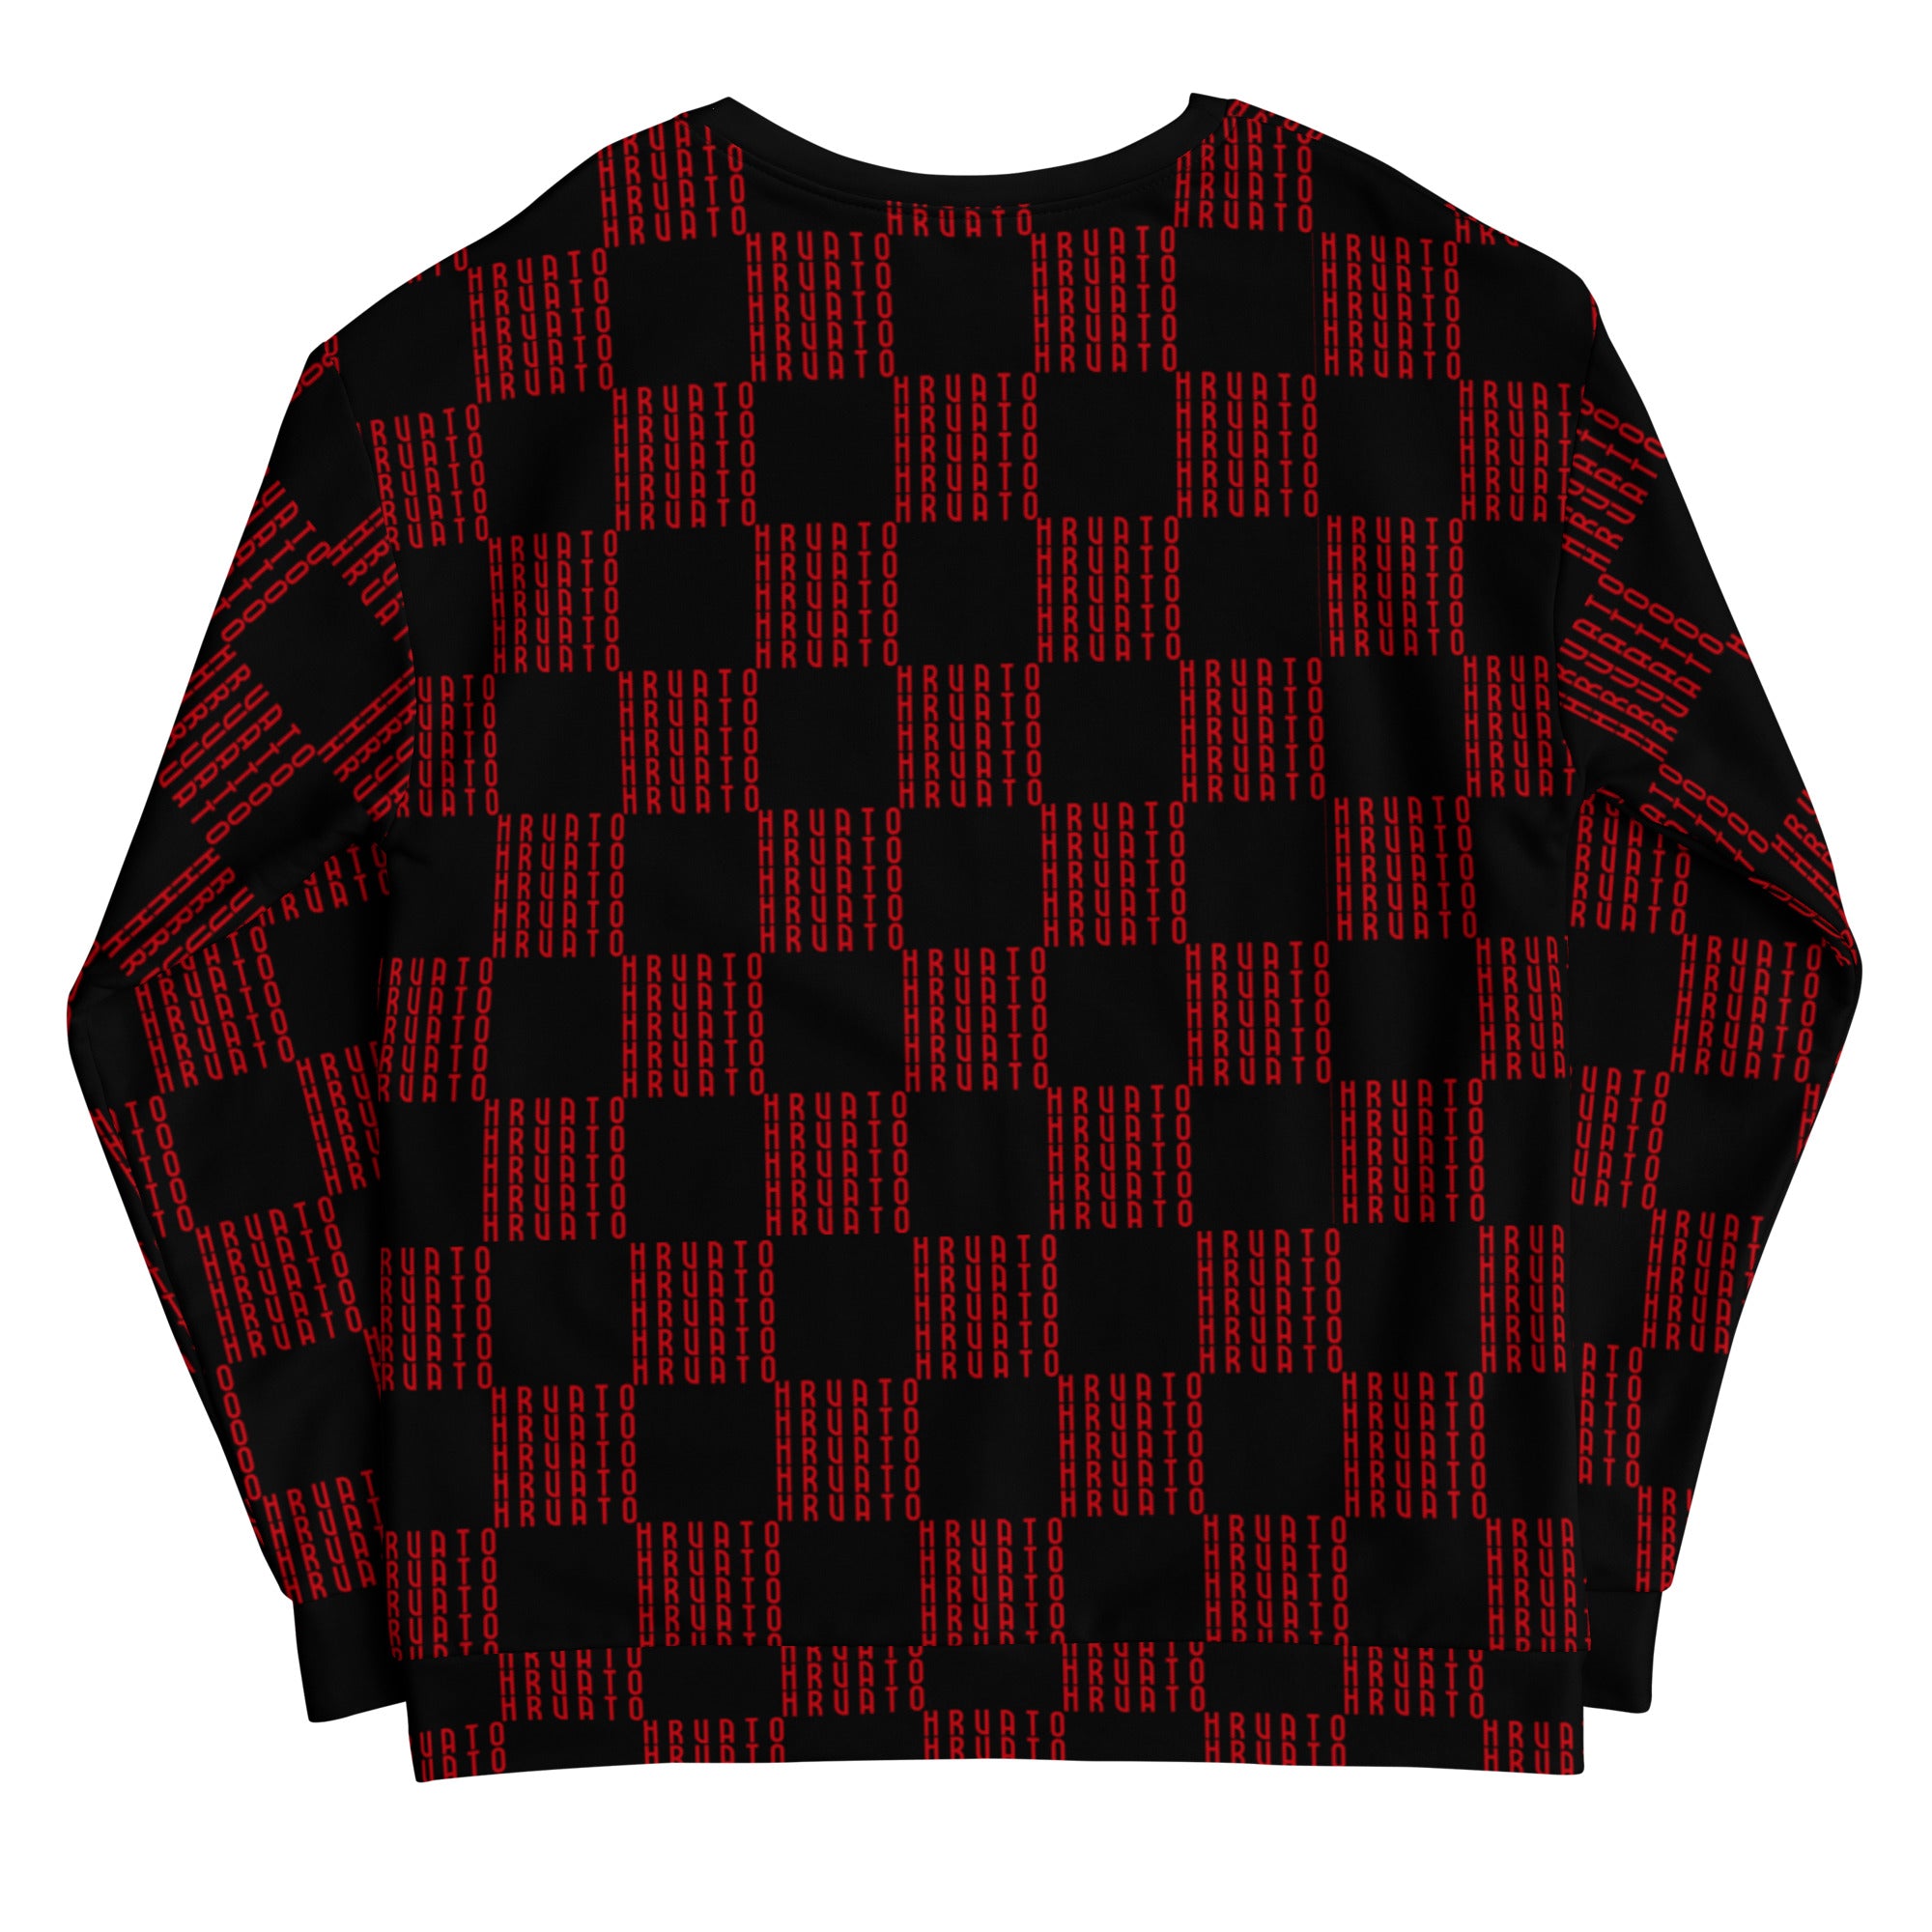 Women Sweatshirt HRVATO pattern red